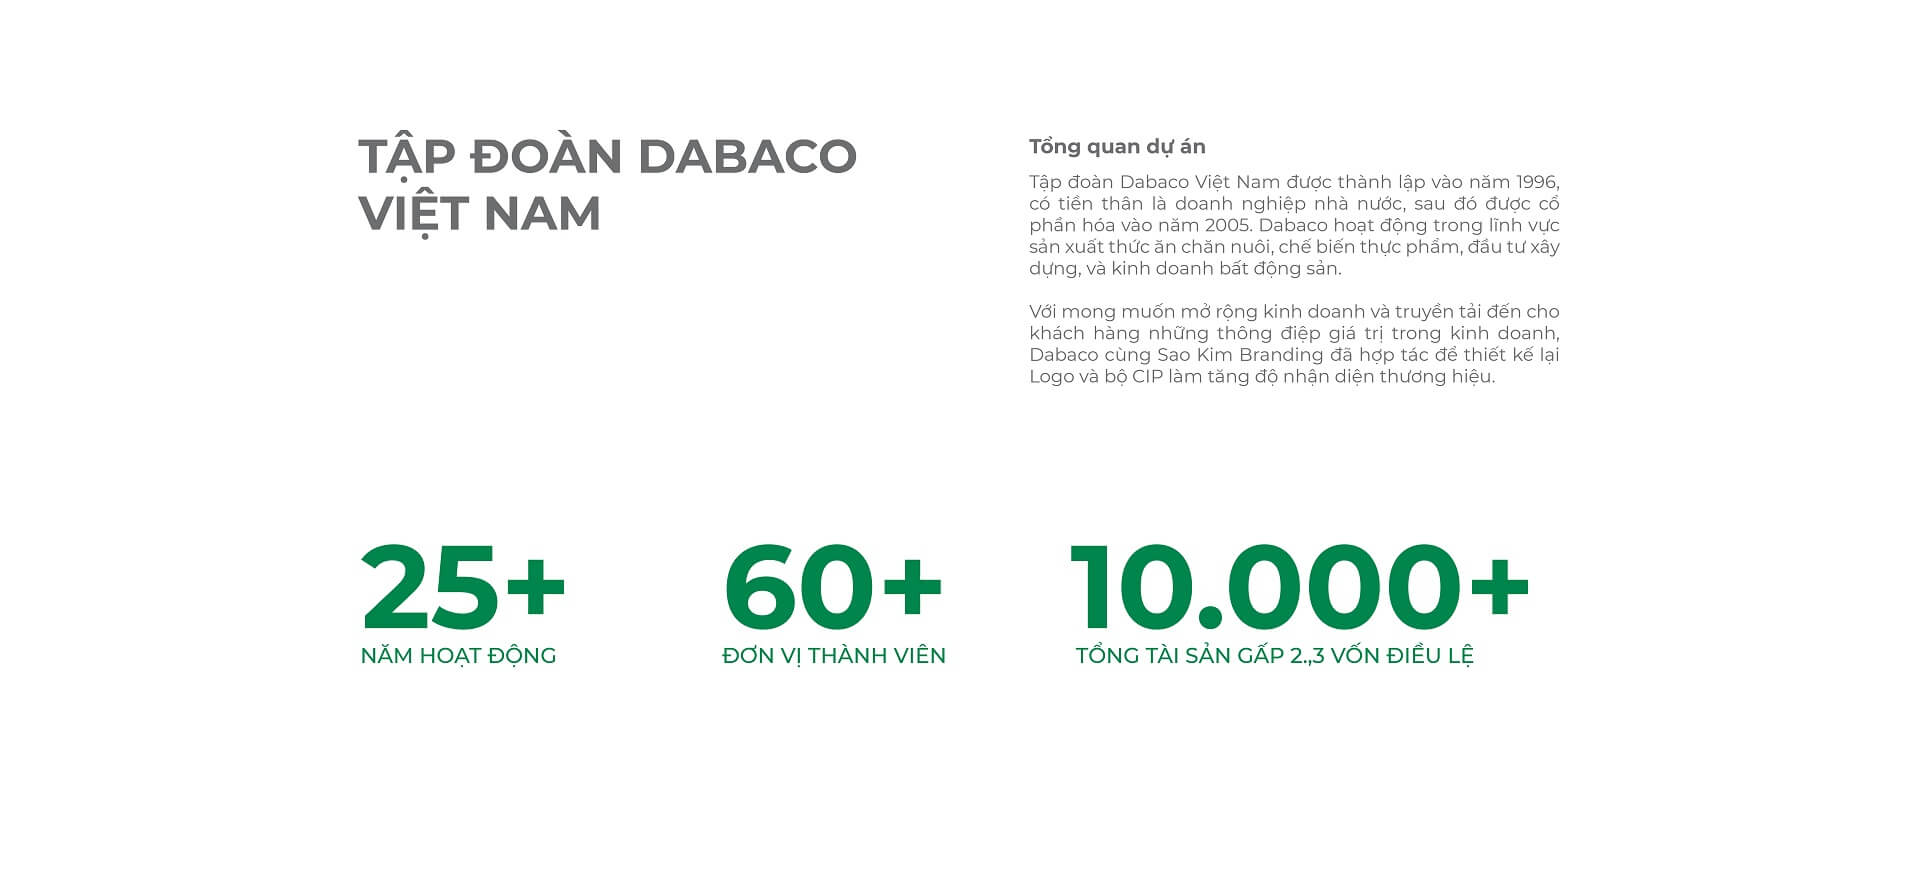 Dự án thiết kế bộ nhận diện thương hiệu, thiết kế logo DABACO GROUP của Sao Kim Branding - 2